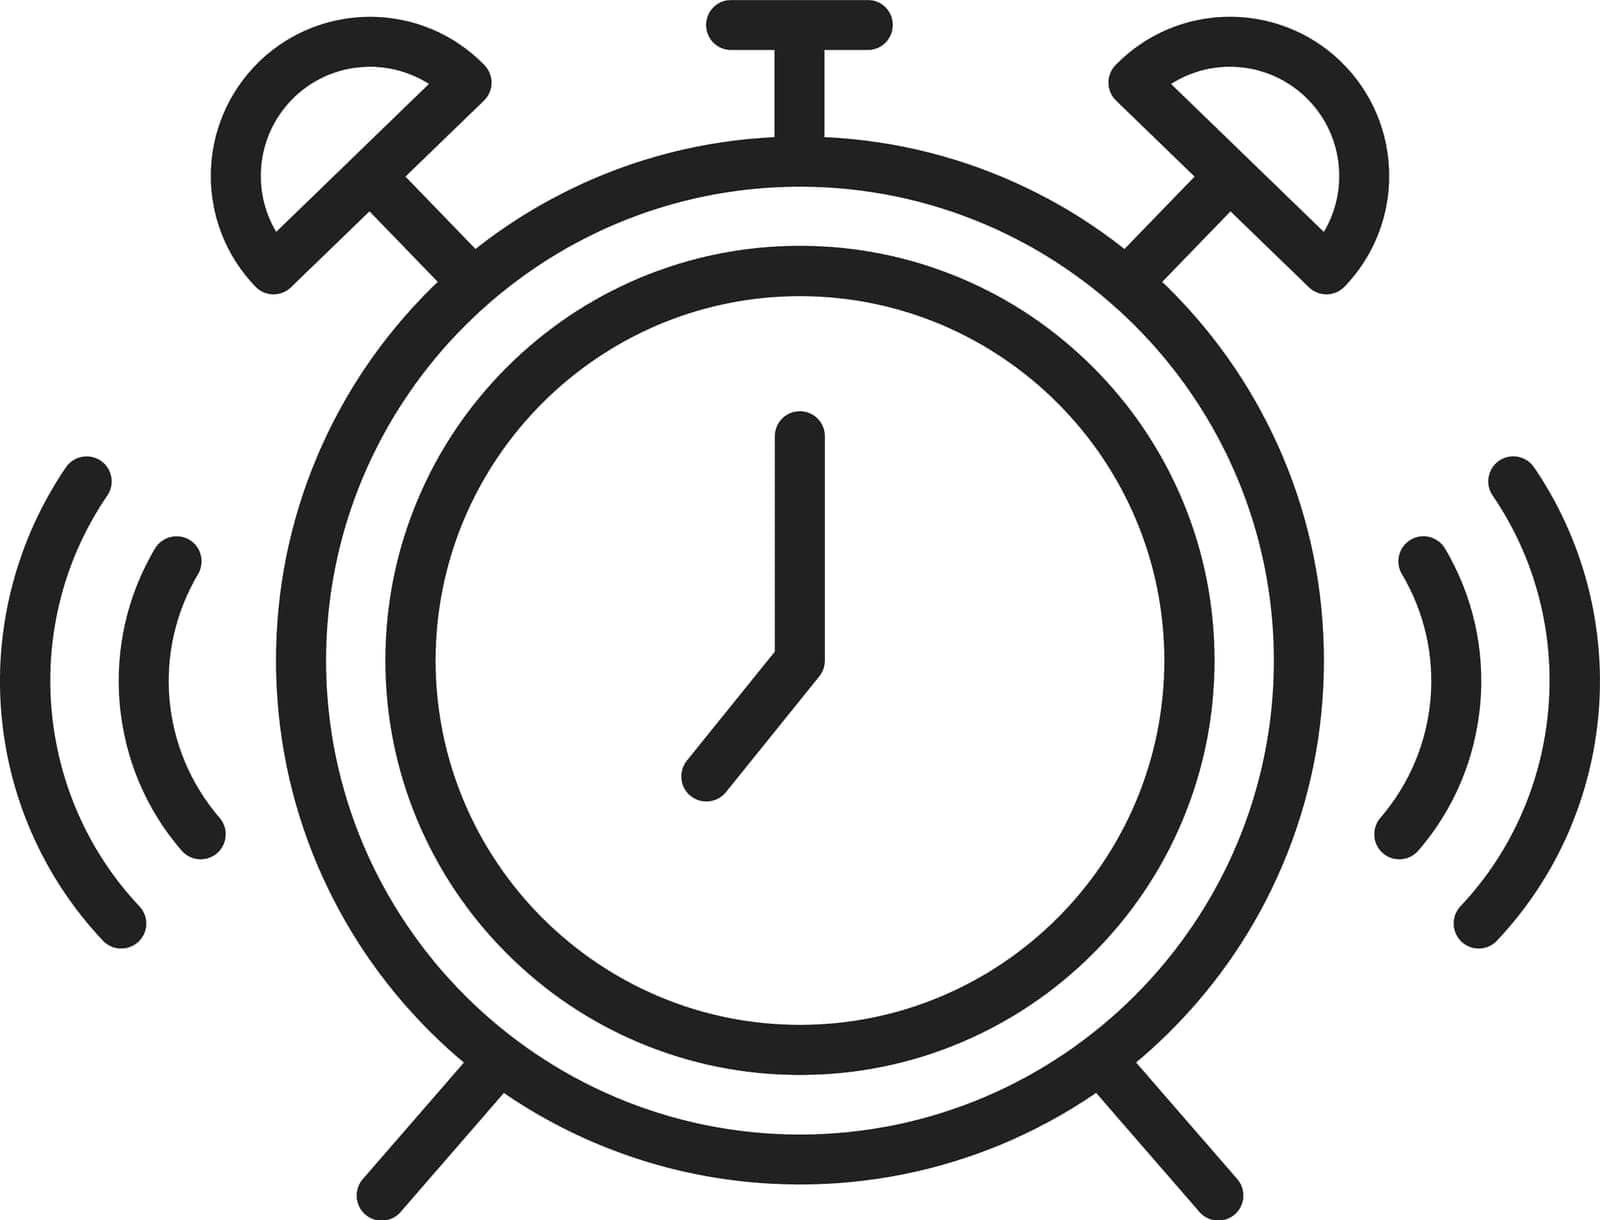 Alarm Clock Icon Image. by ICONBUNNY